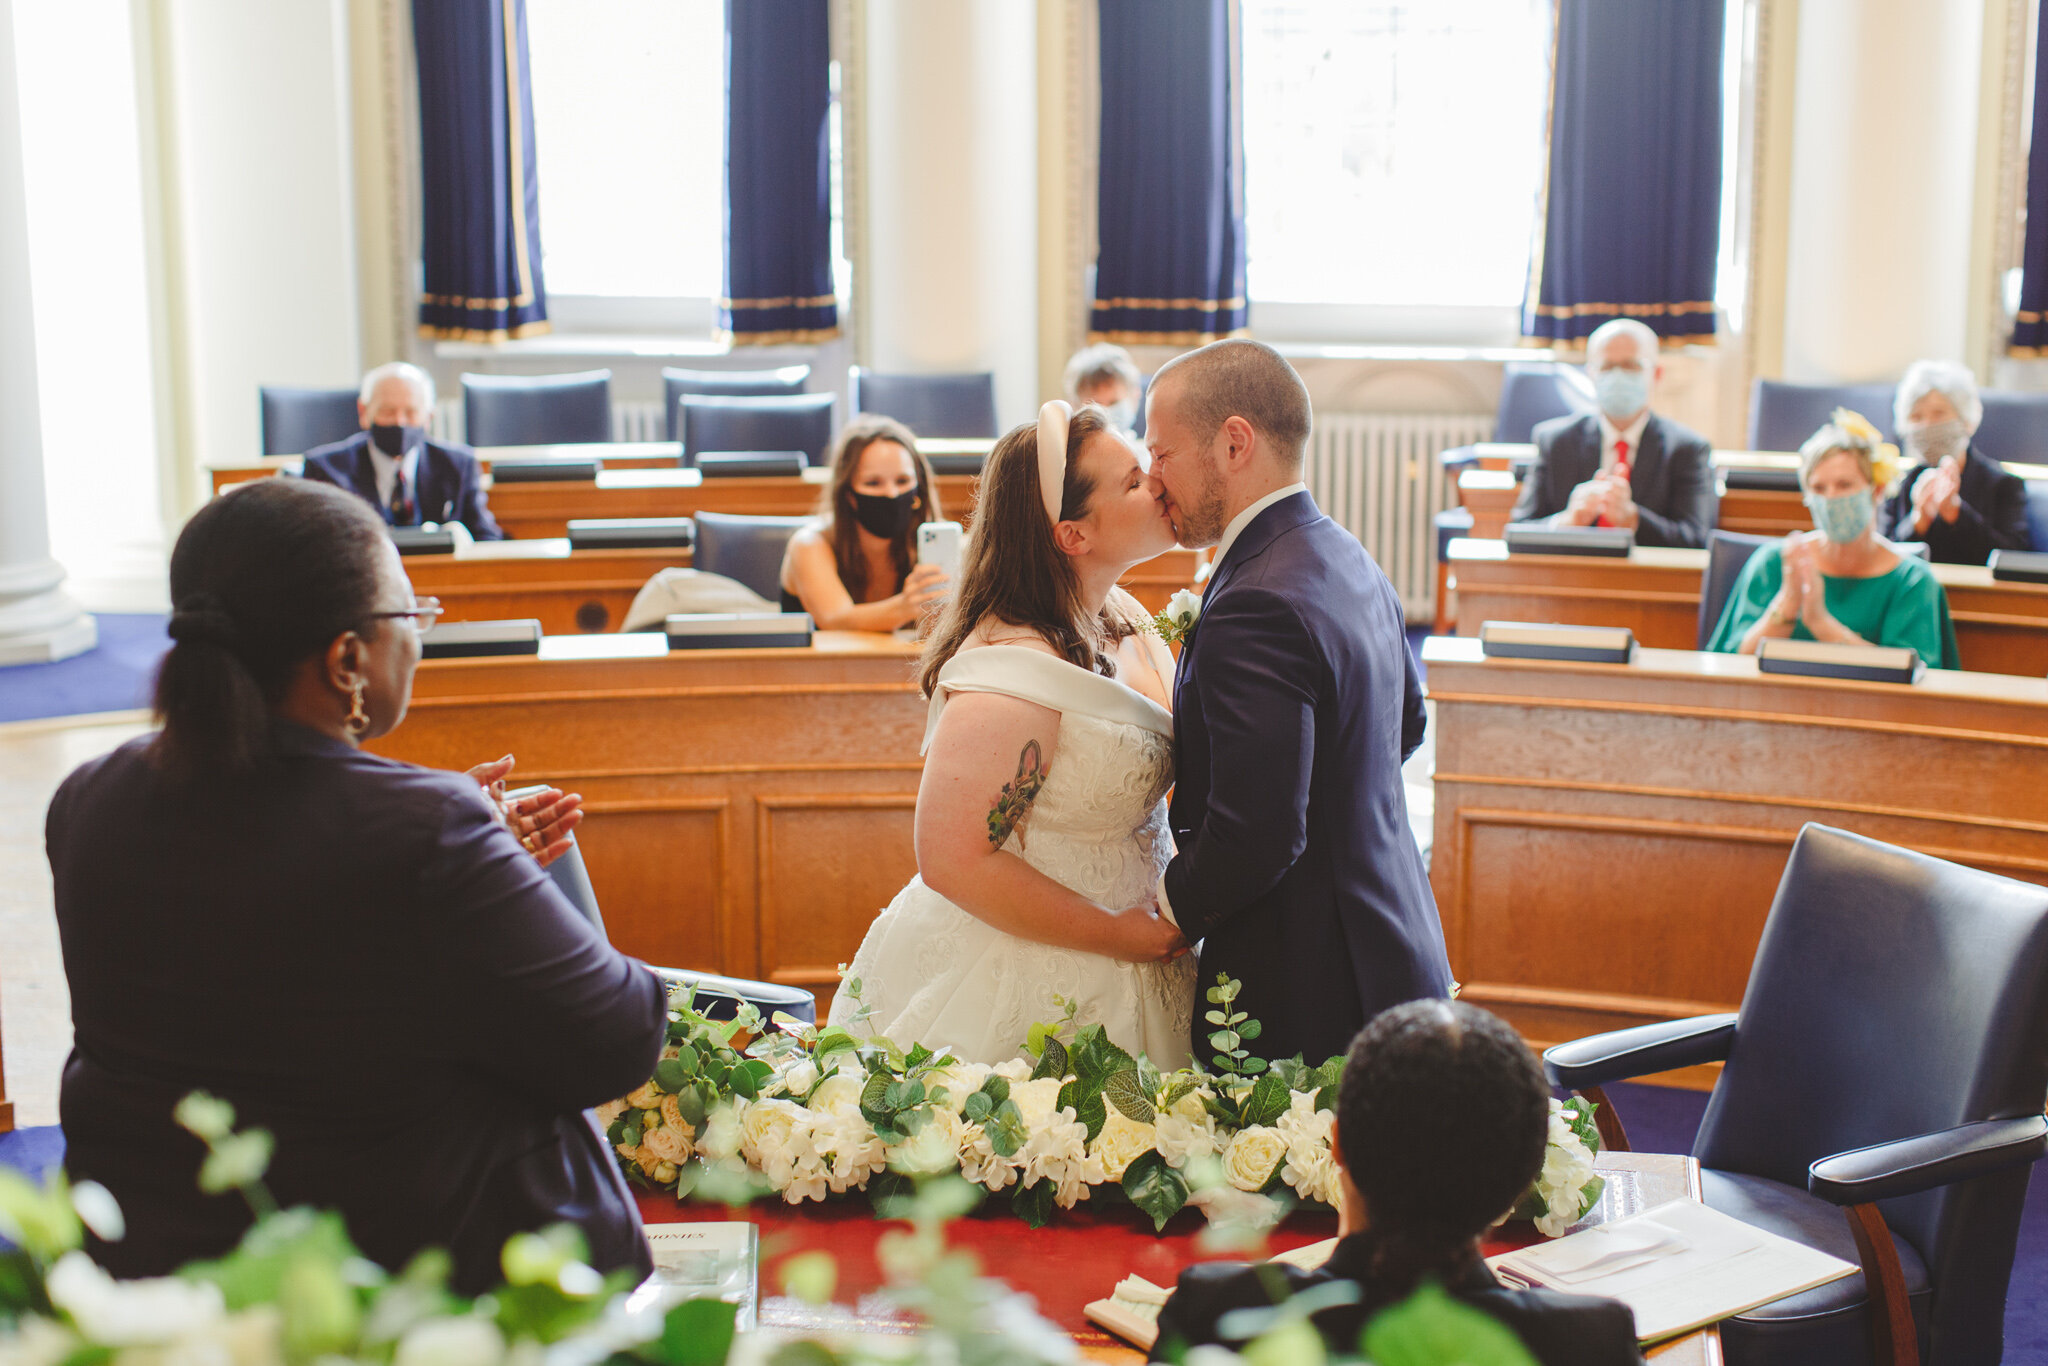 derbyshire-wedding-elopement-photographer-best-2020-73.jpg